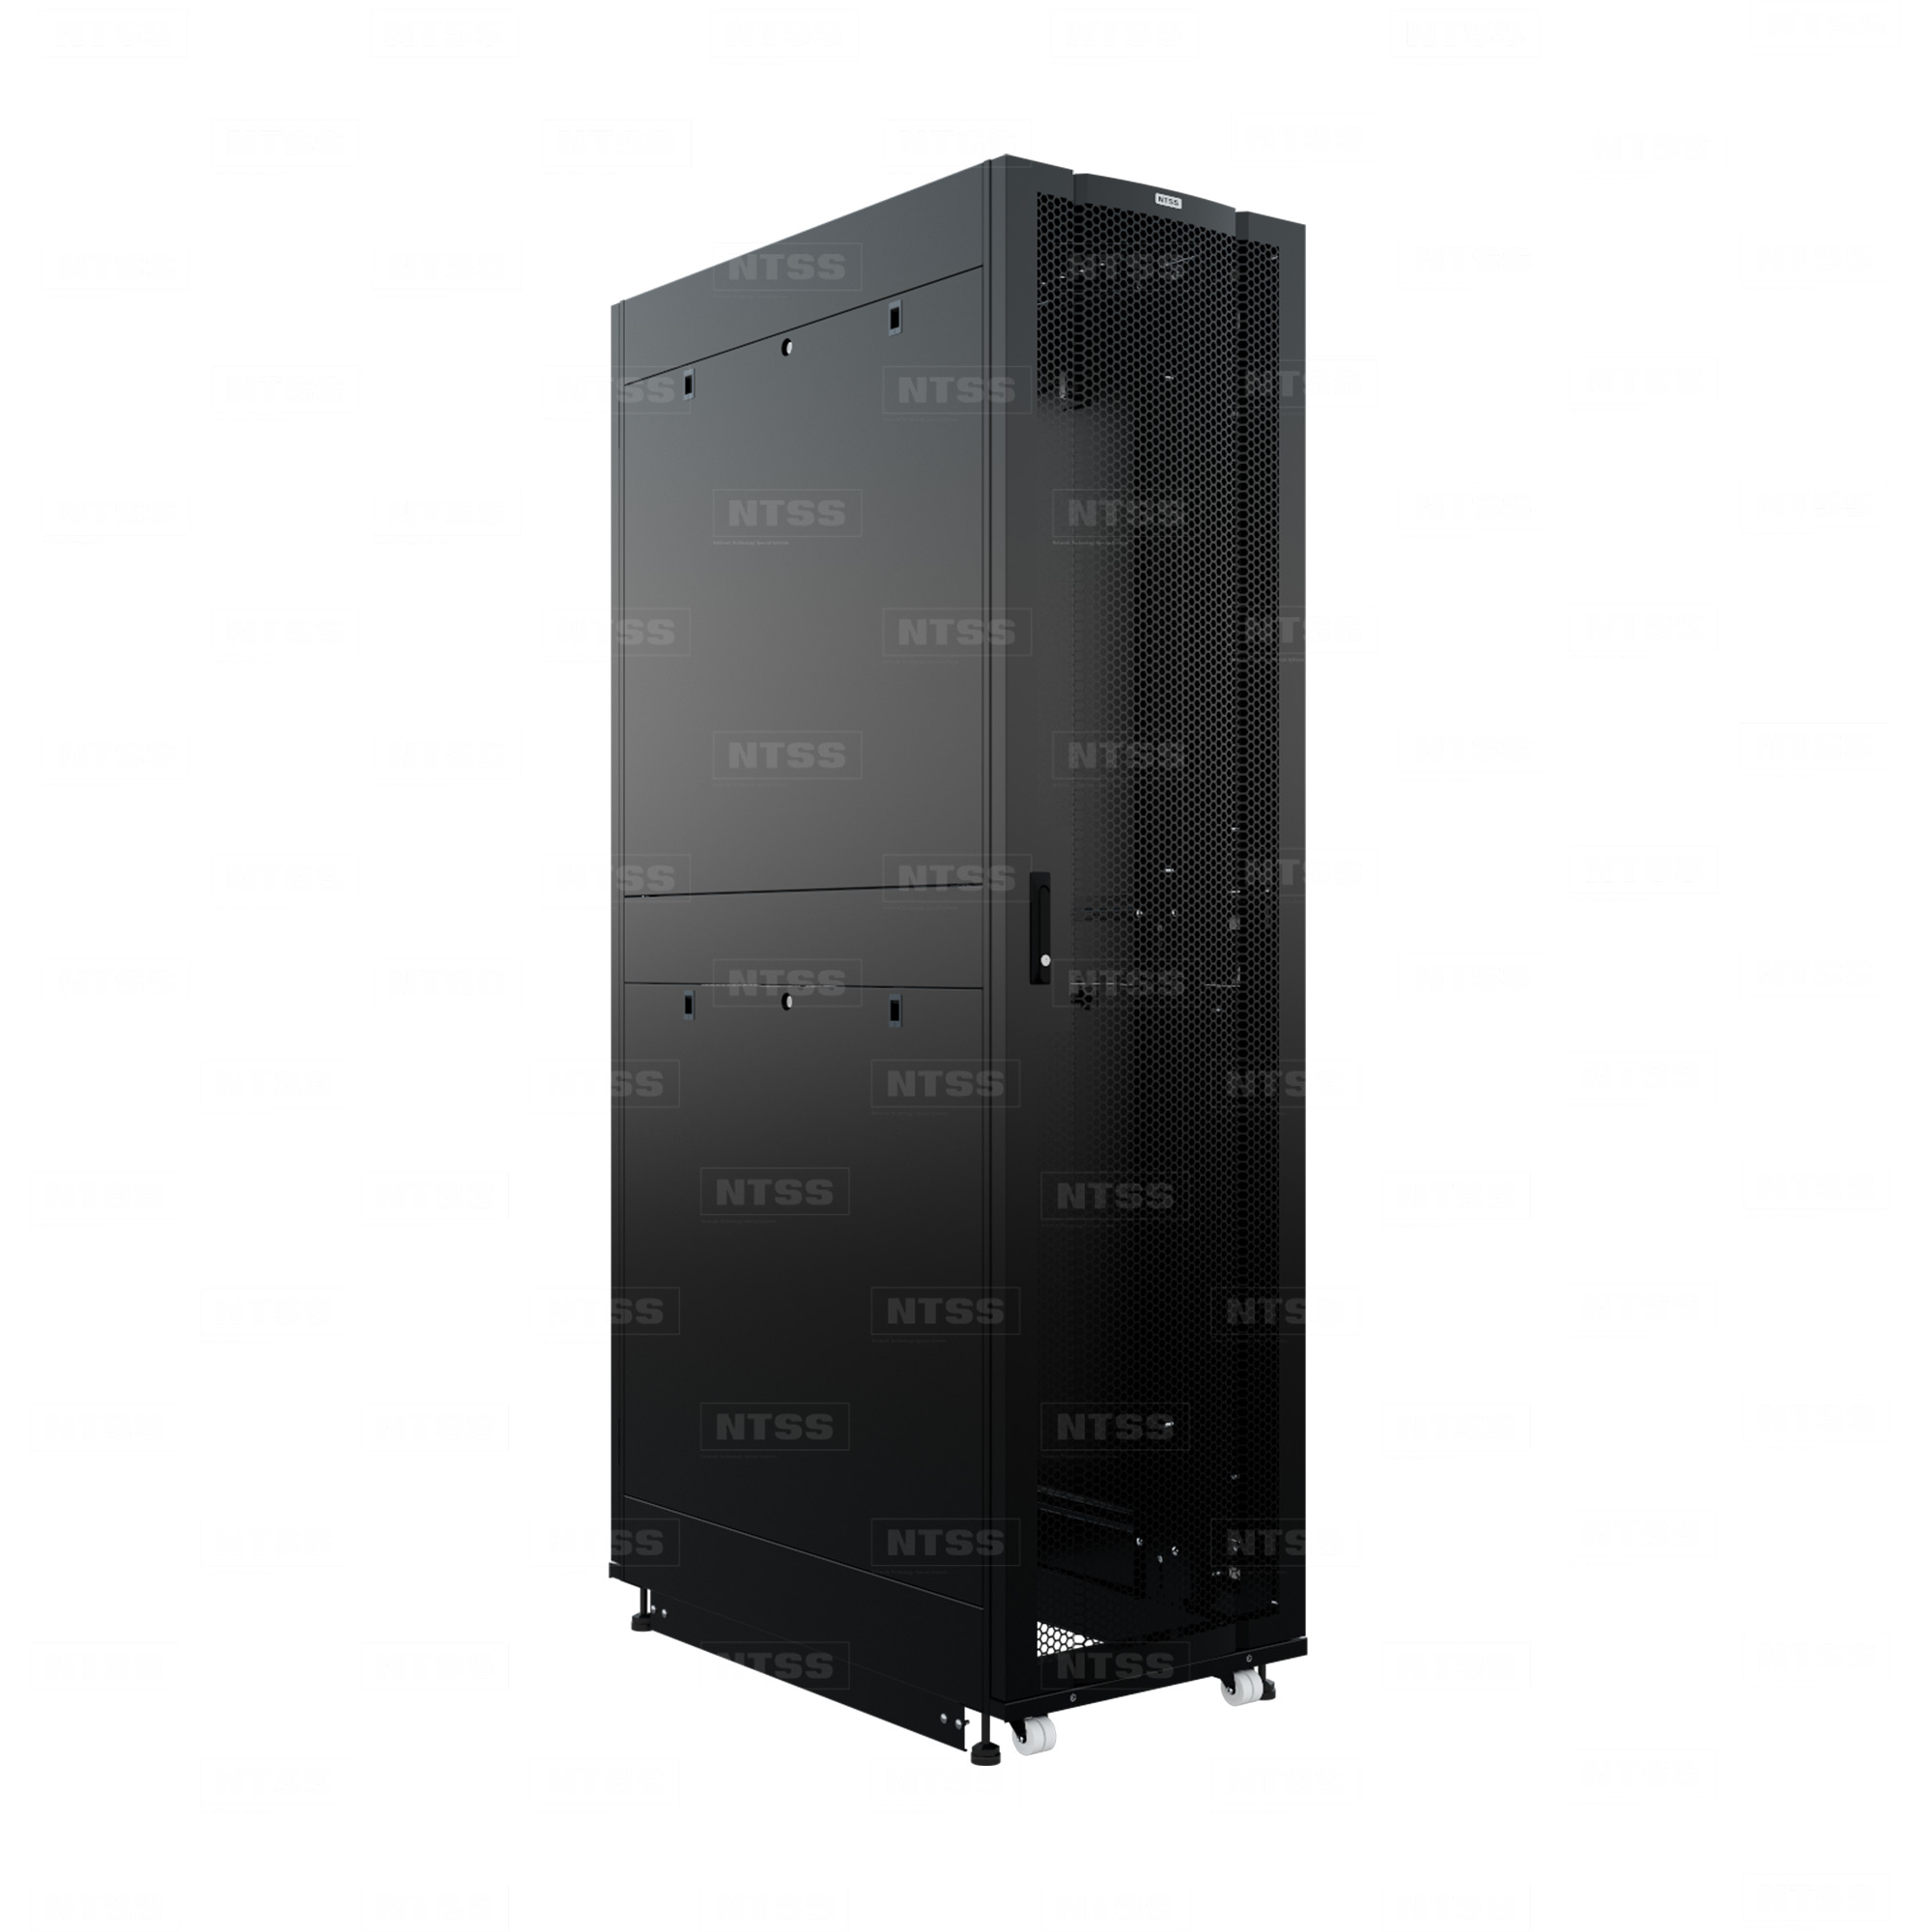 19" Напольный серверный шкаф NTSS ПРОЦОД PC 48U 600х1070 мм, передняя дверь перфорация, задняя дверь распашная двойная перфорированная, боковые стенки, регулируемые опоры, ролики, черный RAL 9005